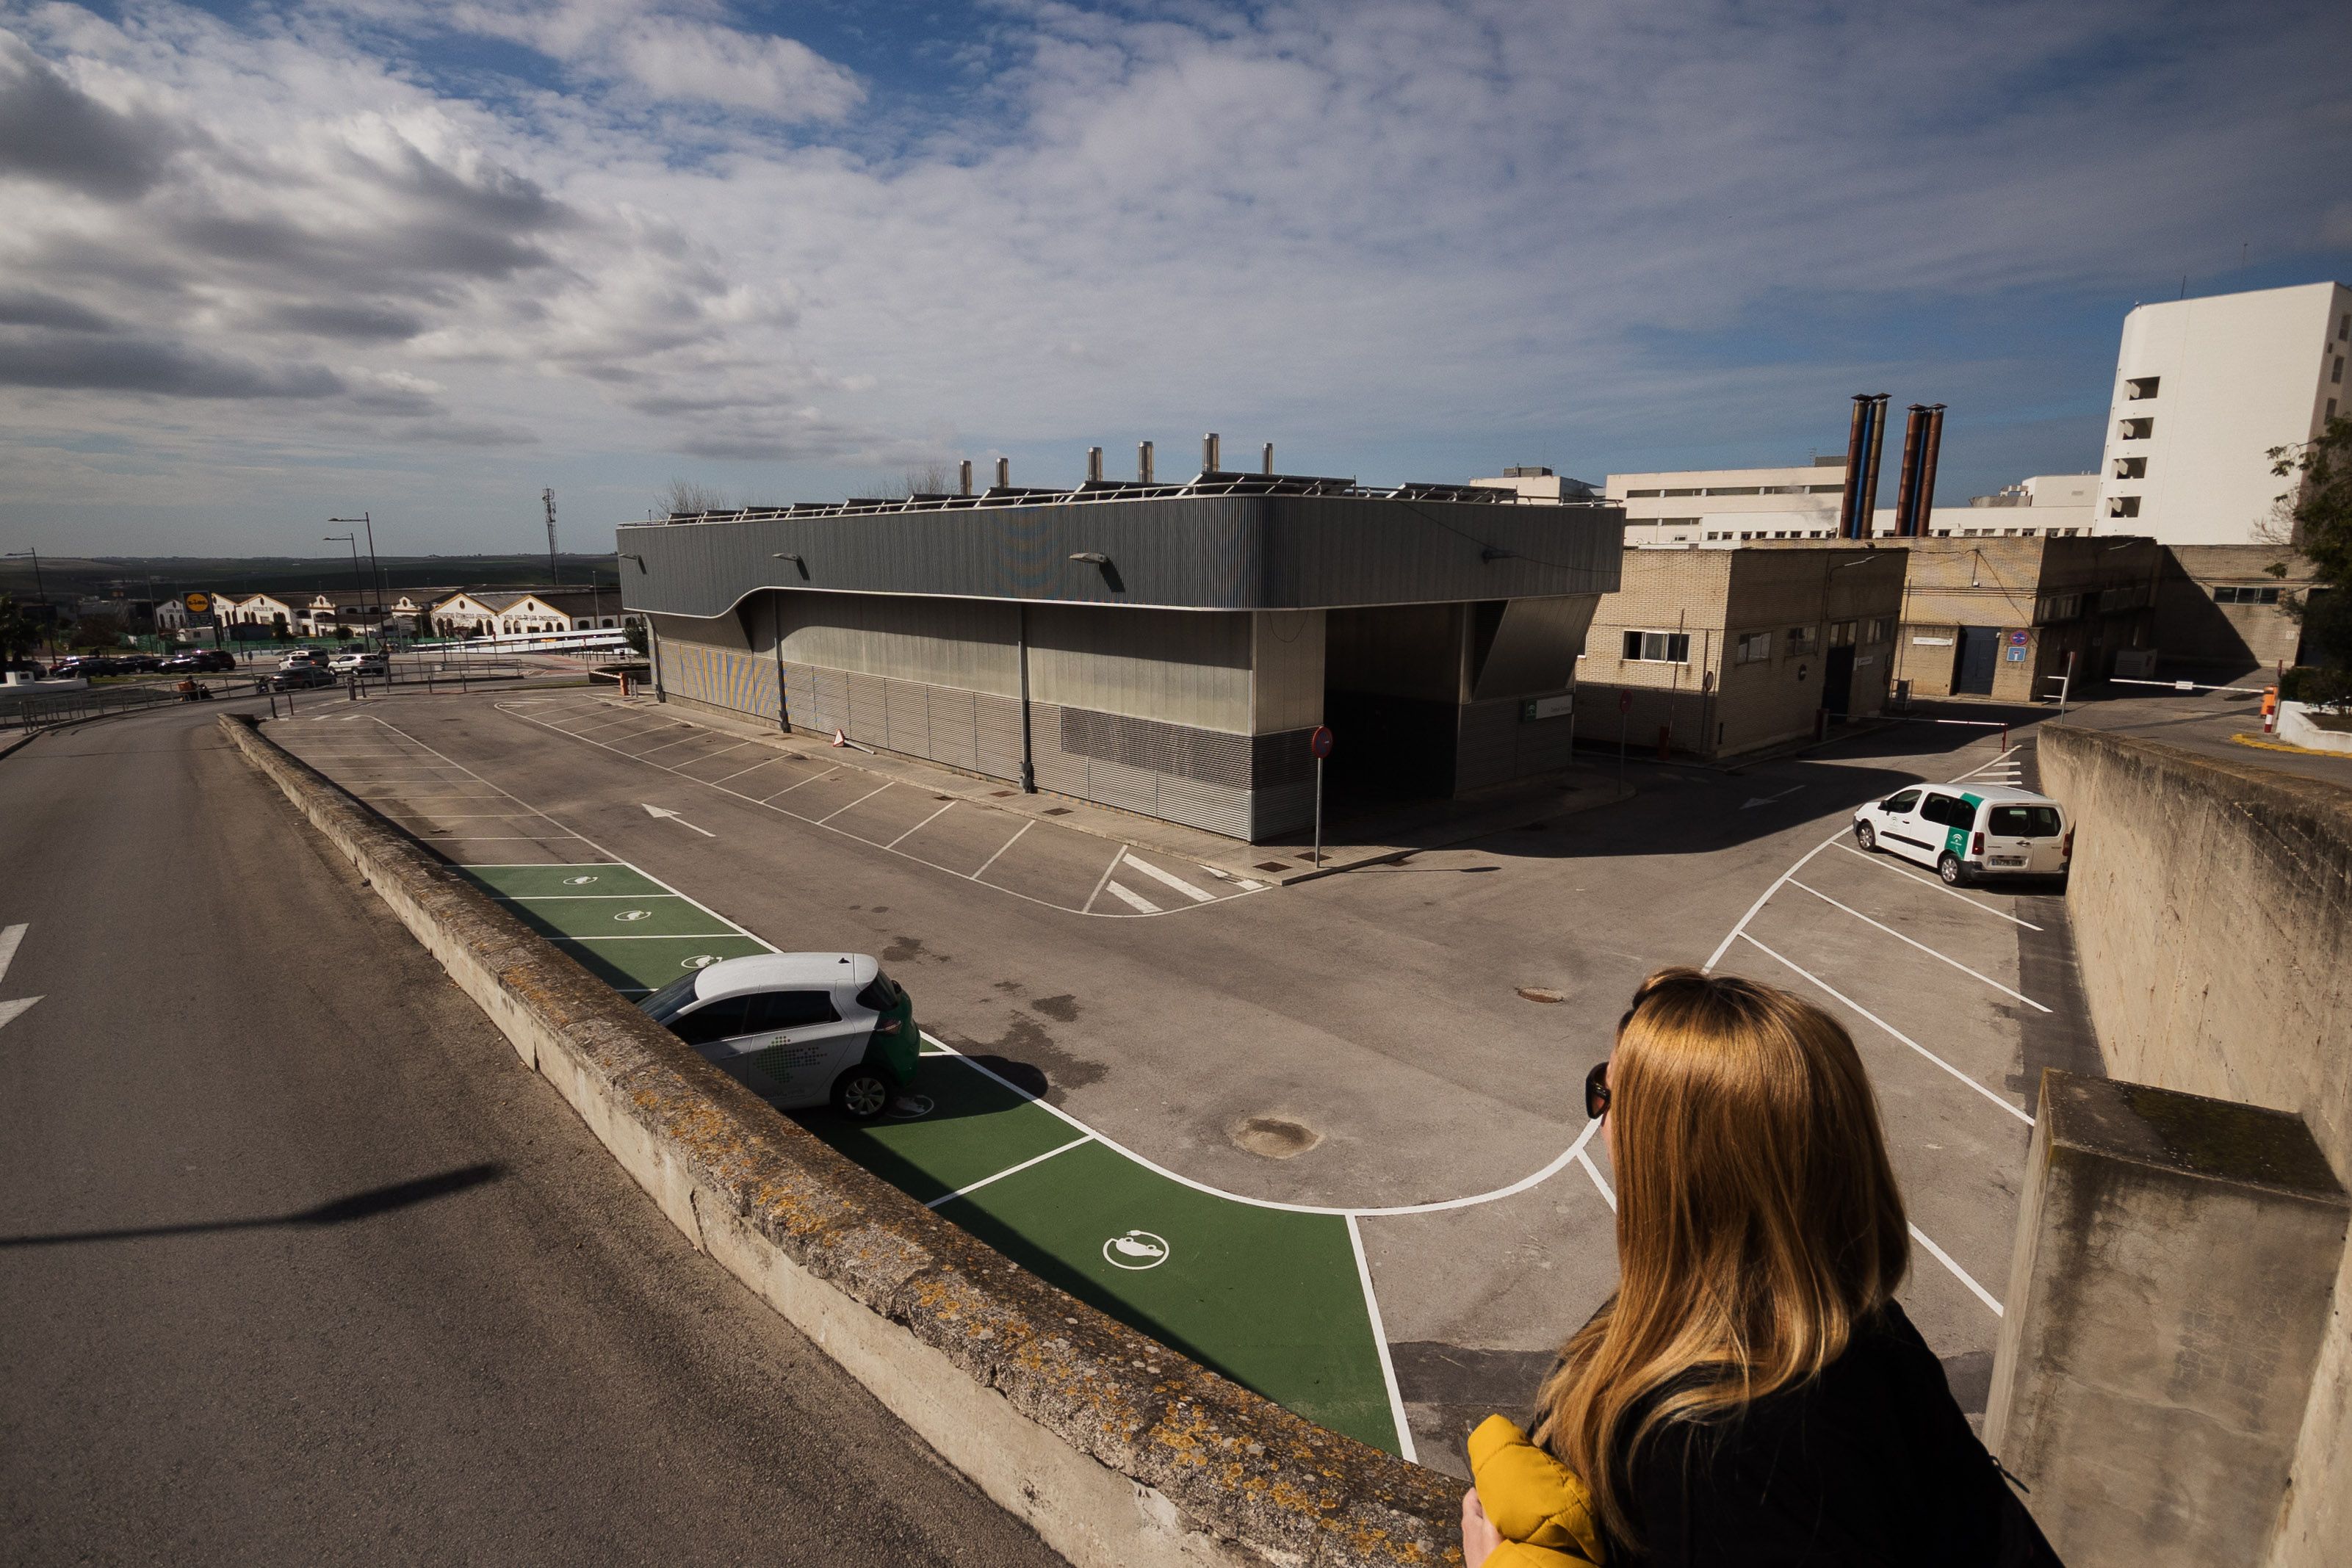 El autocovid, situado en una zona del aparcamiento del Hospital de Jerez, ya ha sido desmontado.